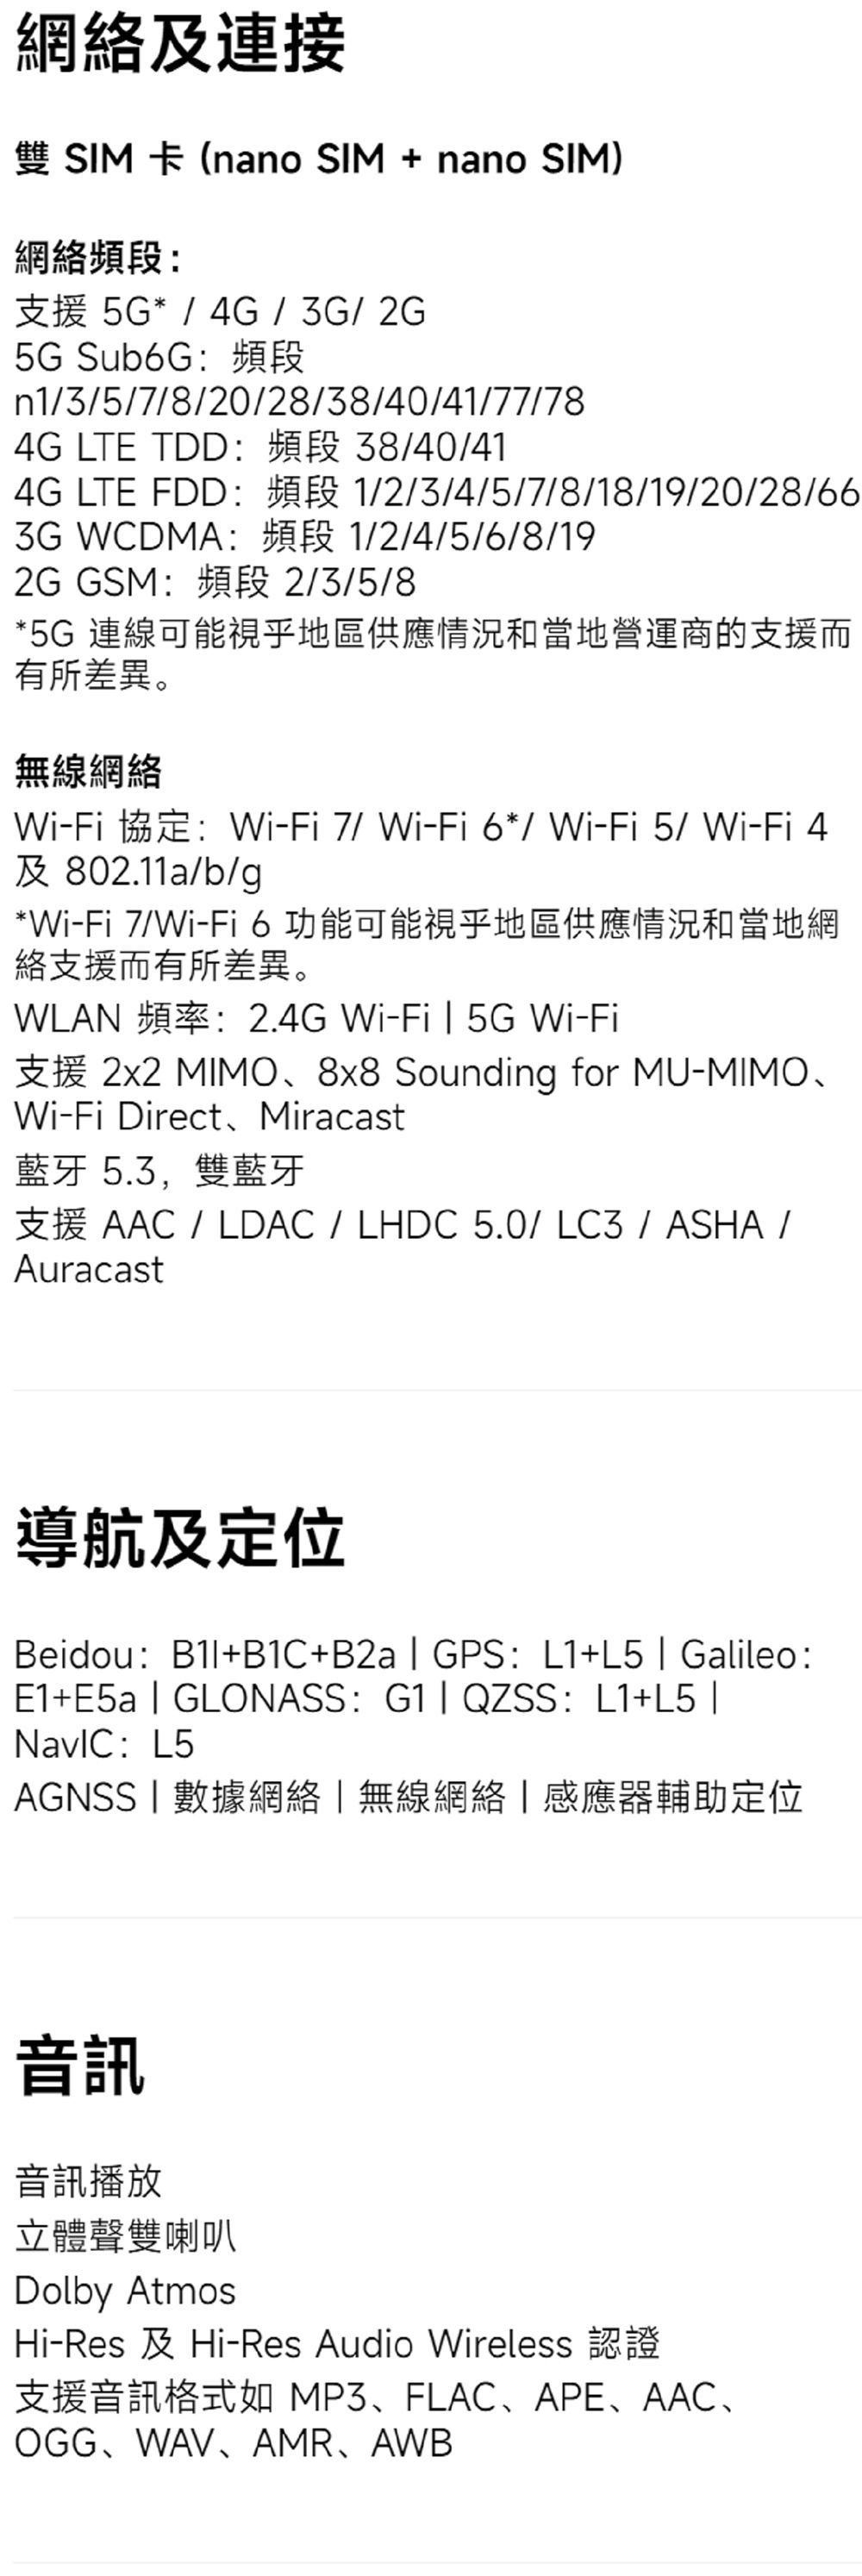 網及連接雙SIM 卡 (nano SIM + nano SIM)網絡頻段支援 5G* / 4G/3G/2G5G Sub6G:頻段n1/3/5/7/8/20/28/38/40/41/77/784G LTE TDD:頻段 38/40/414G LTE FDD:頻段 1/2/3/4/5/7/8/18/19/20/28/663G WCDMA:頻段 1/2/4/5/6/8/192G GSM:頻段 2/3/5/8*5G 連線可能視乎地區供應情況和當地營運商的支援而有所差異。無線網絡Wi-Fi 協定:Wi-Fi 7/Wi-Fi6*/ Wi-Fi5/Wi-Fi 4及 802.11a/b/g*Wi-Fi 7/Wi-Fi 6 功能可能視乎地區供應情況和當地網絡支援而有所差異。WLAN 頻率:2.4G Wi-Fi  5G Wi-Fi支援 2x2 MIMO8x8 Sounding for MU-MIMOWi-Fi Direct、Miracast藍牙 5.3,雙藍牙支援 AAC / LDAC / LHDC 5.0/LC3/ASHA/Auracast導航及定位Beidou:+B1C+B2a  GPS: L1+L5  Galileo:E1+E5a  GLONASS: G1 QZSS: L1+L5 : L5AGNSS數據網絡無線網絡|感應器輔助定位音訊音訊播放立體聲雙喇叭Dolby AtmosHi-Res 及Hi-Res Audio Wireless 認證支援音訊格式如MP3、FLAC、APE、AAC、OGG、WAV、AMR、AWB